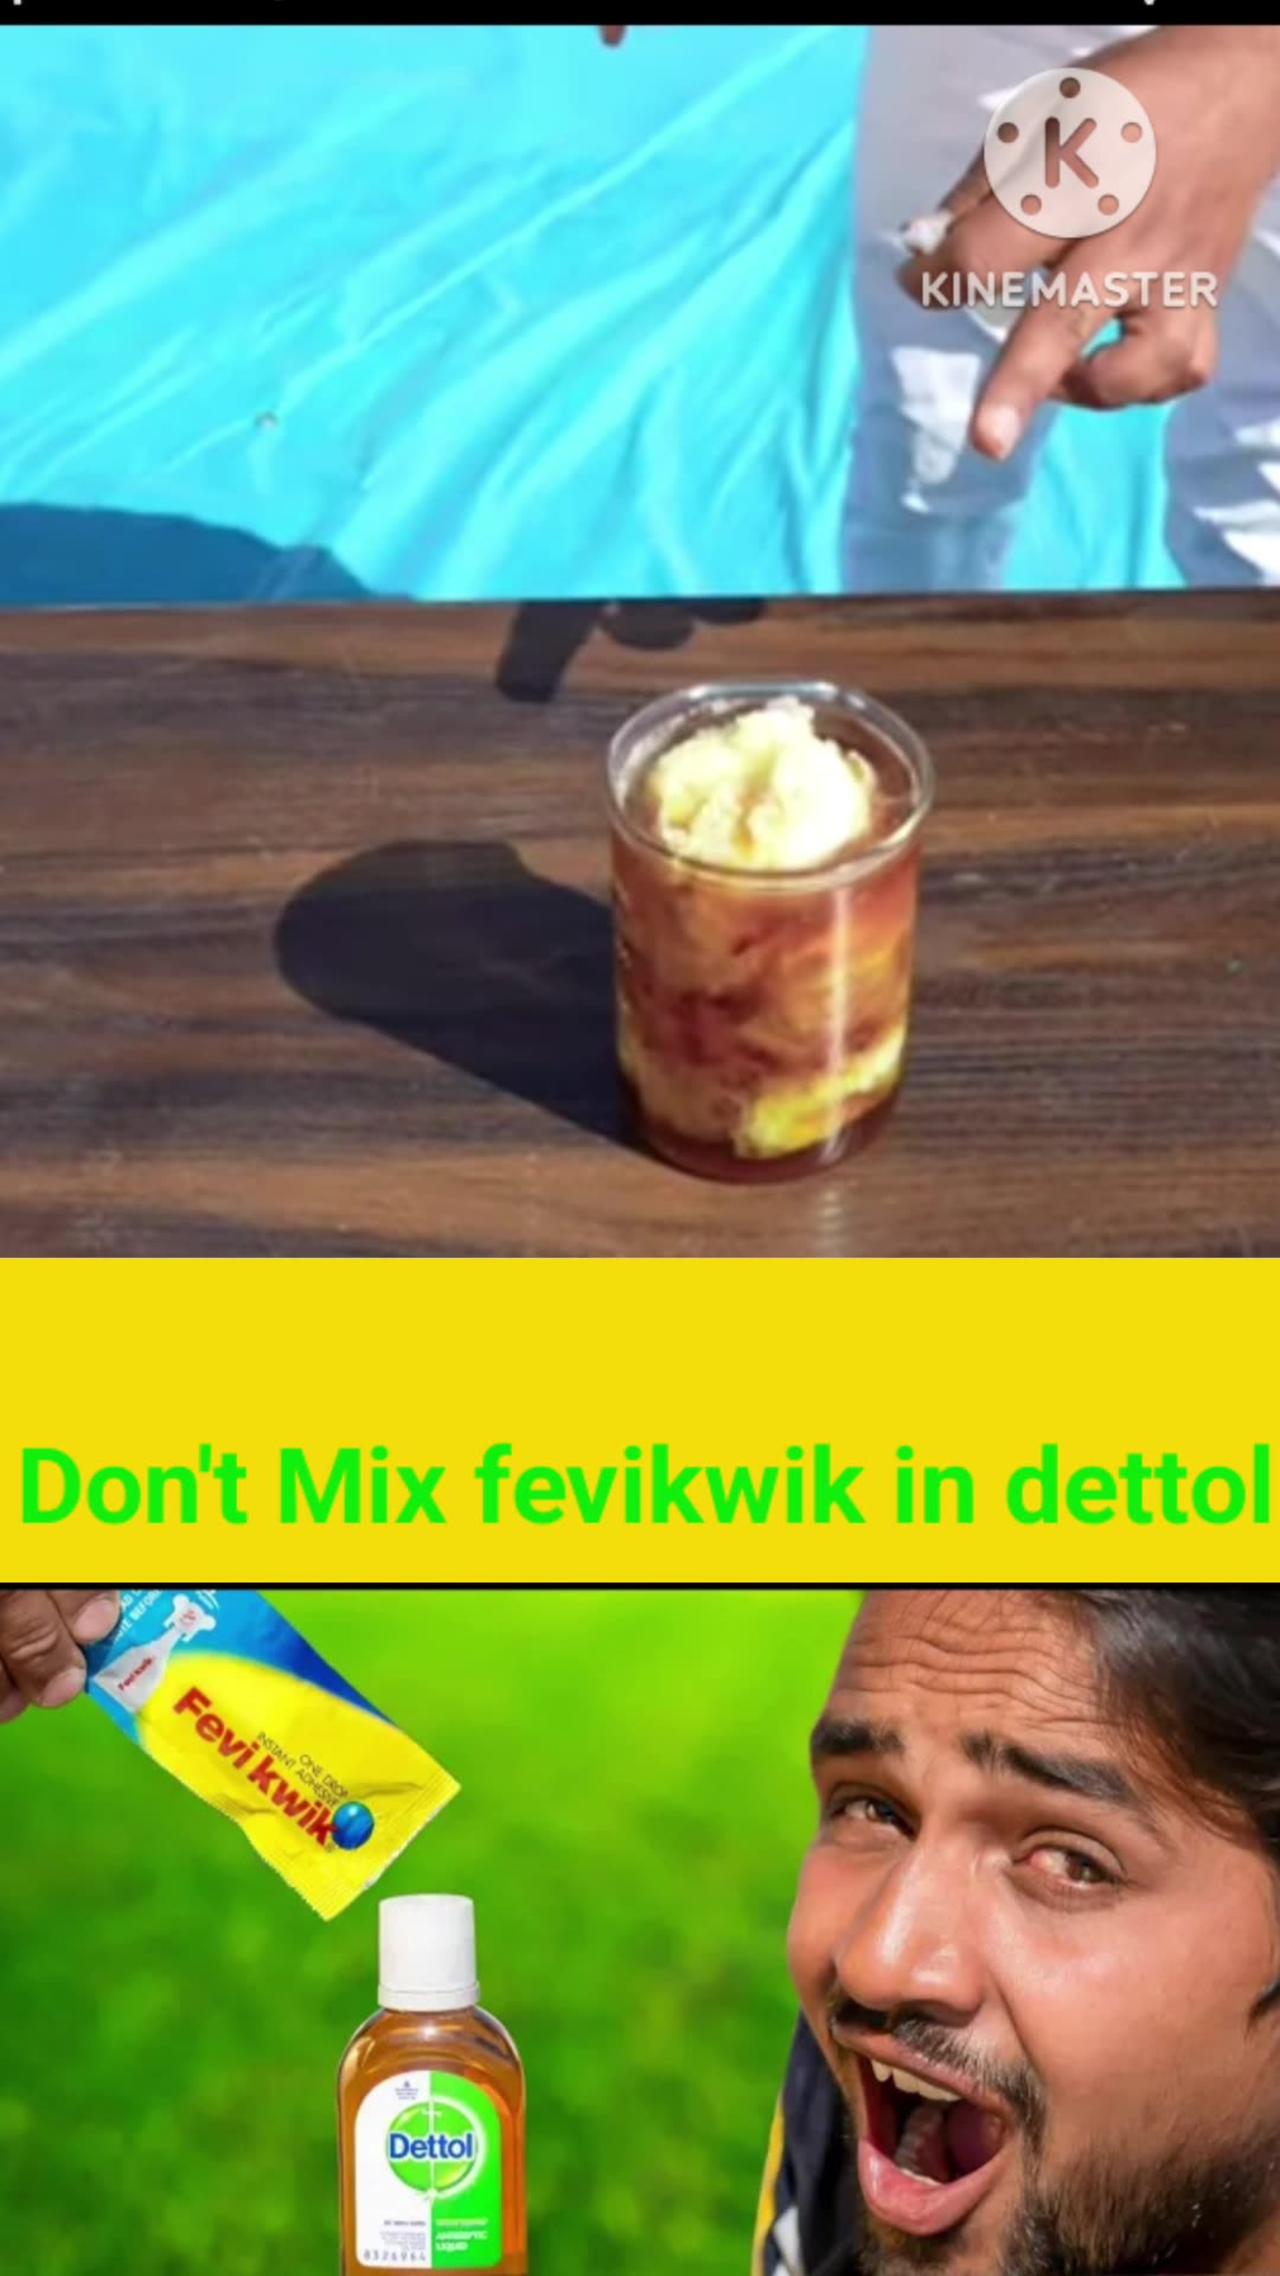 Don't mix dettol and febiquwik